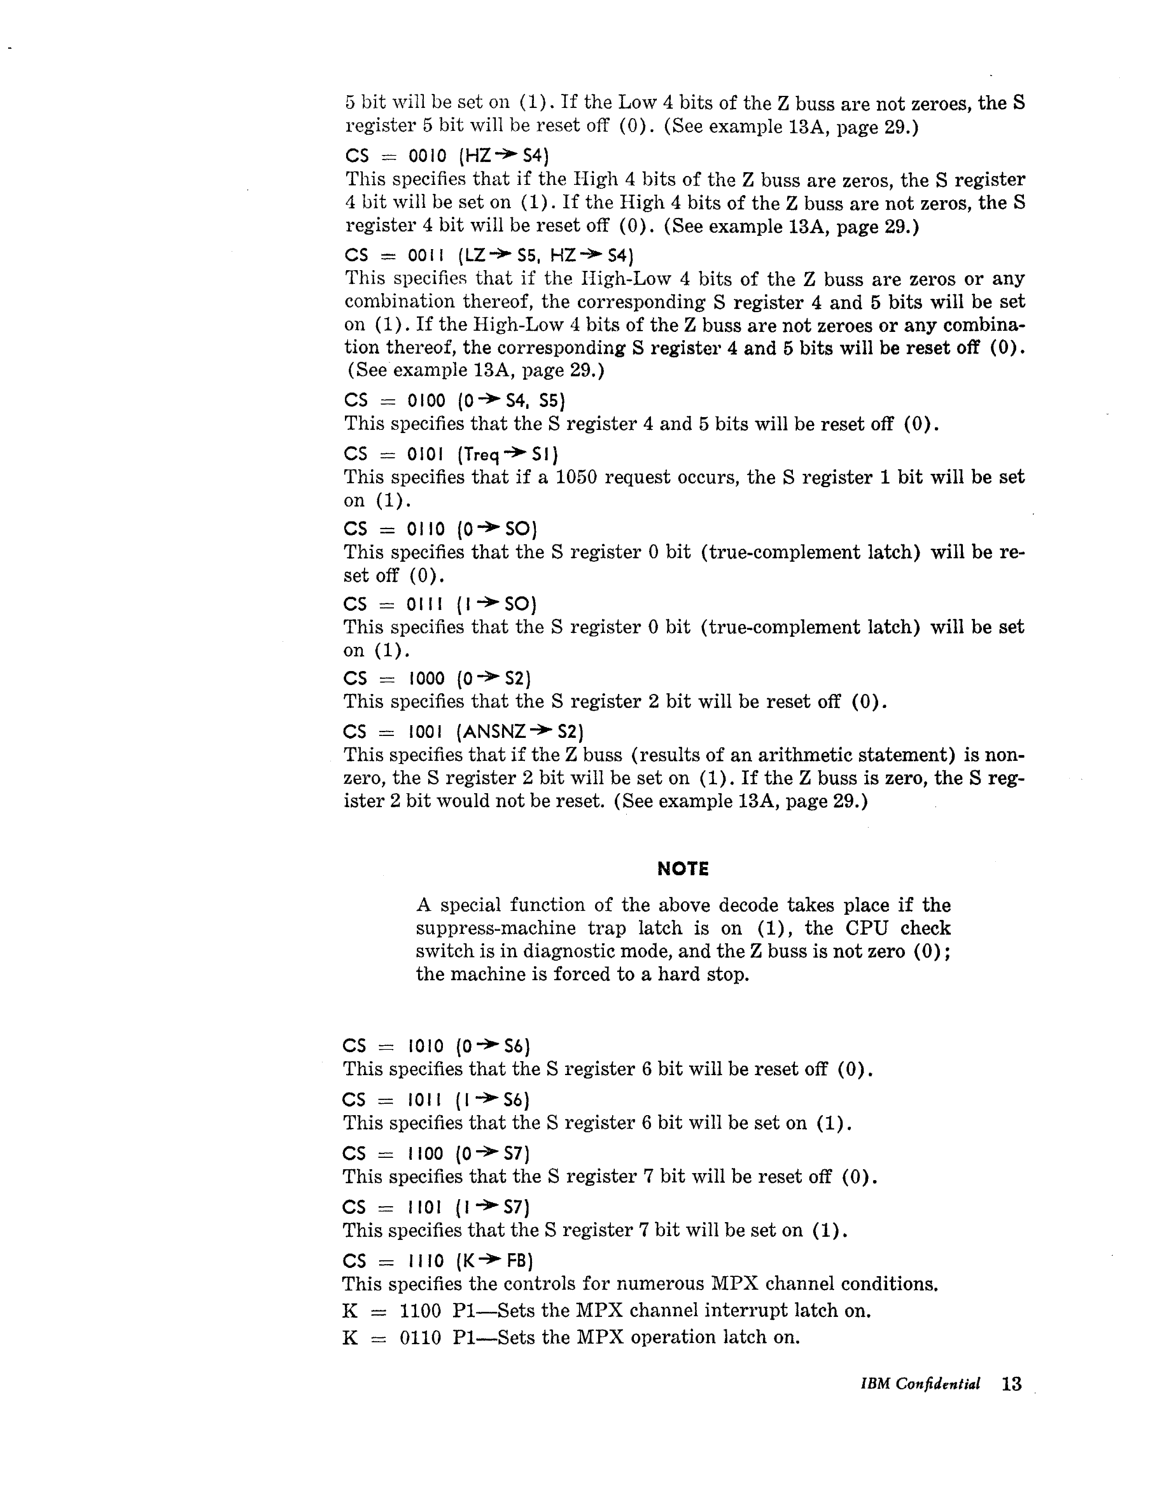 Model_30_Microprogramming_Lang.pdf page 15